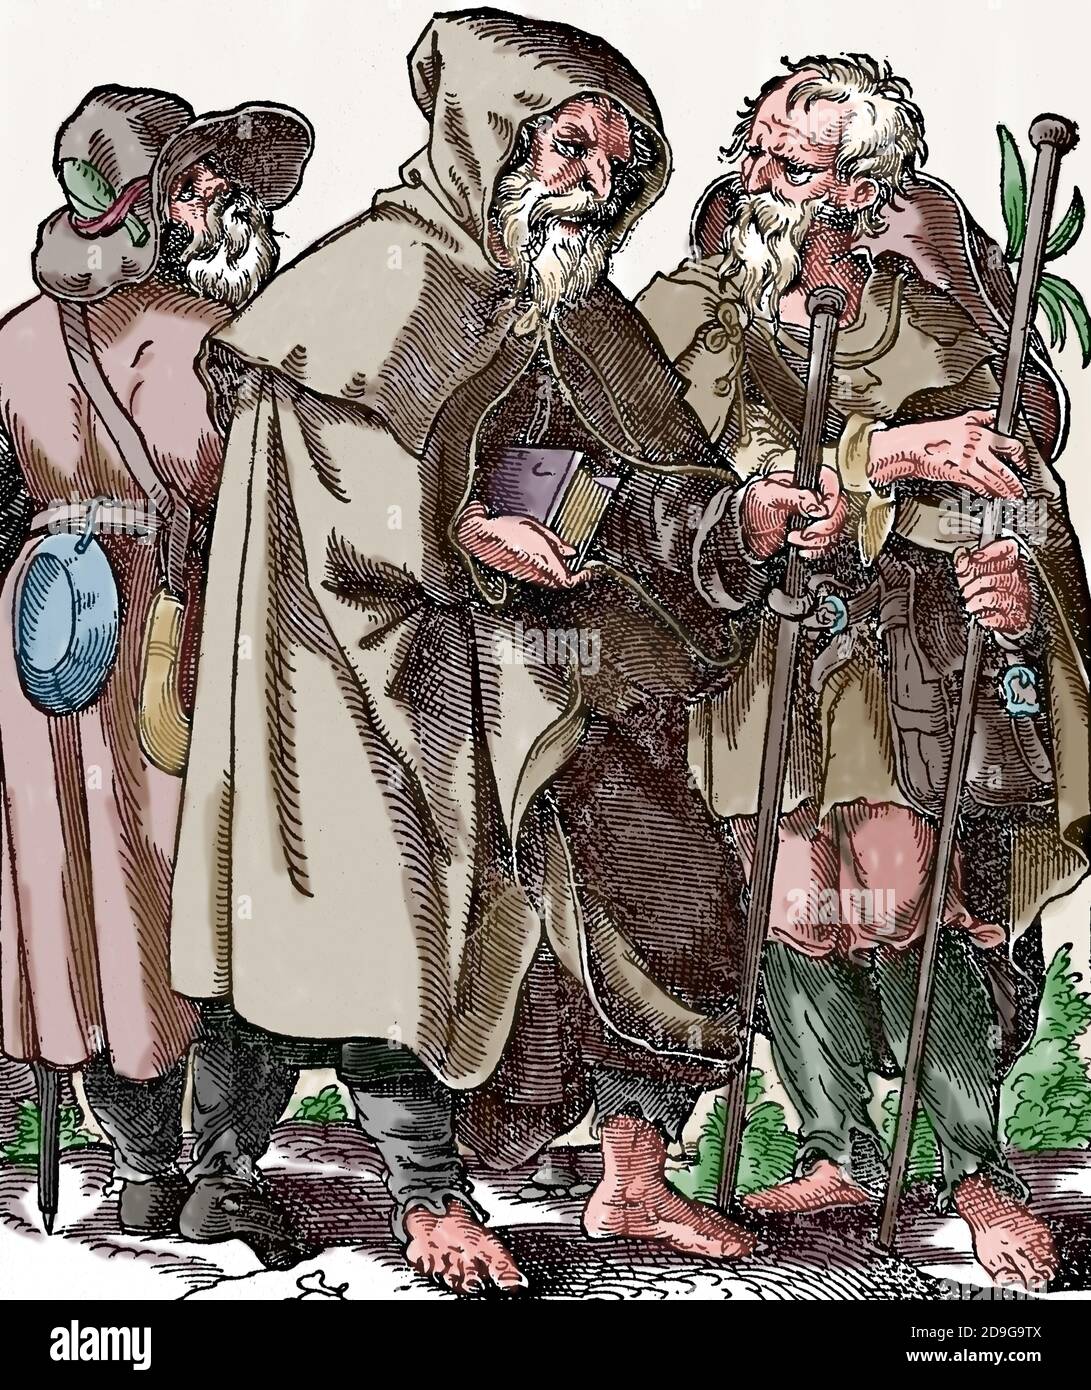 Europa. Baumpilger. Stich von Jost Amman, 1599. Spätere Färbung. Stockfoto